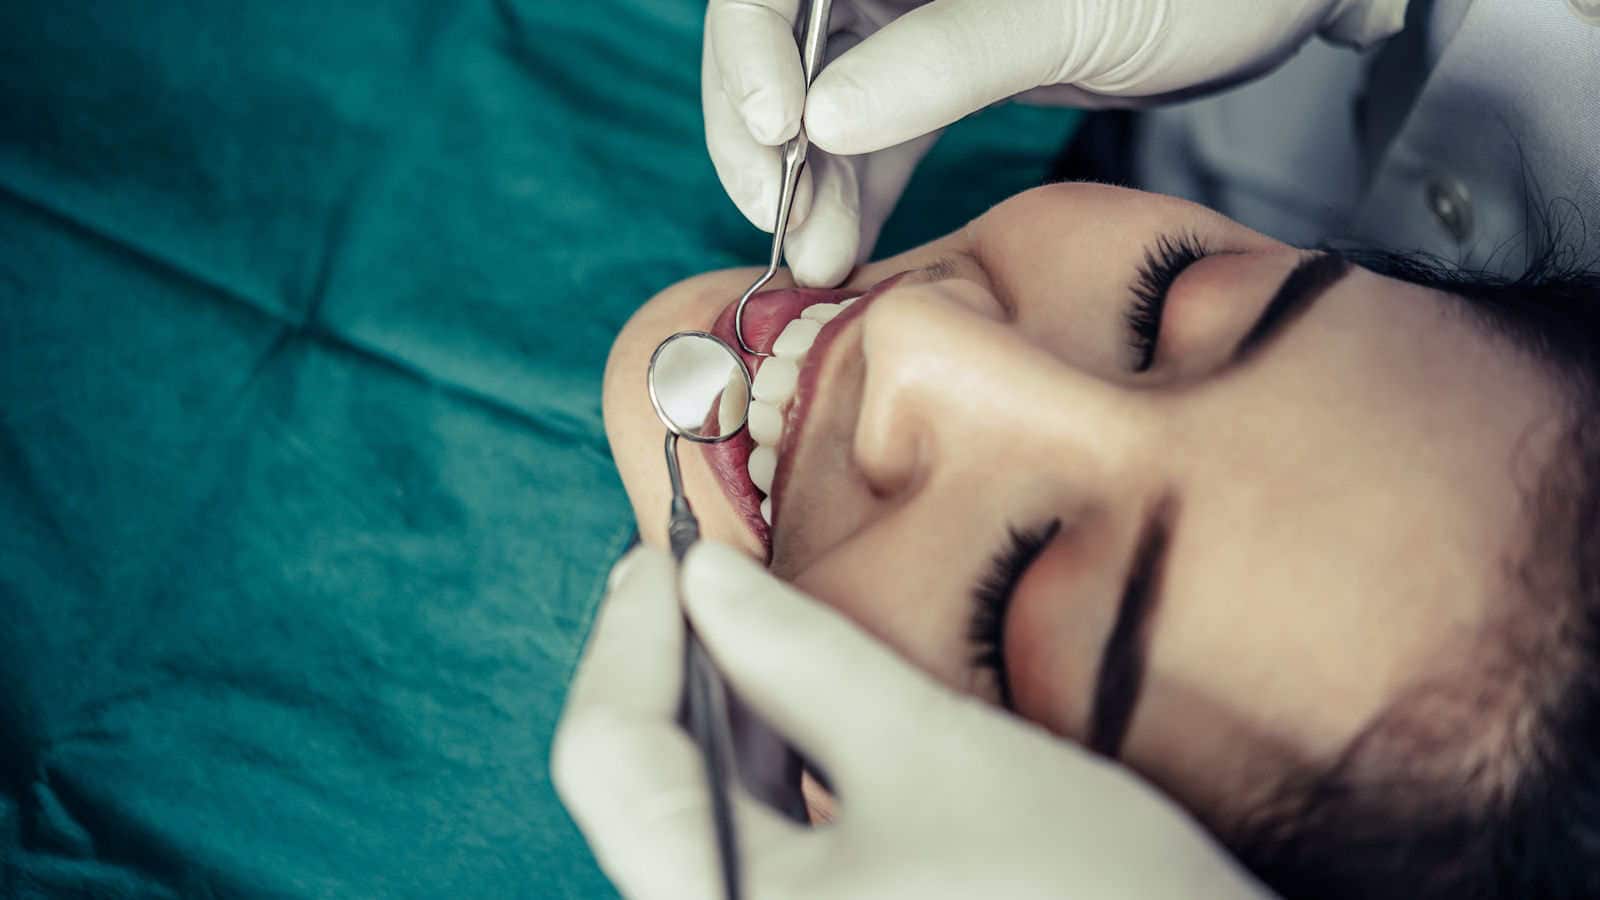 Dana Orthodontics of Greeley